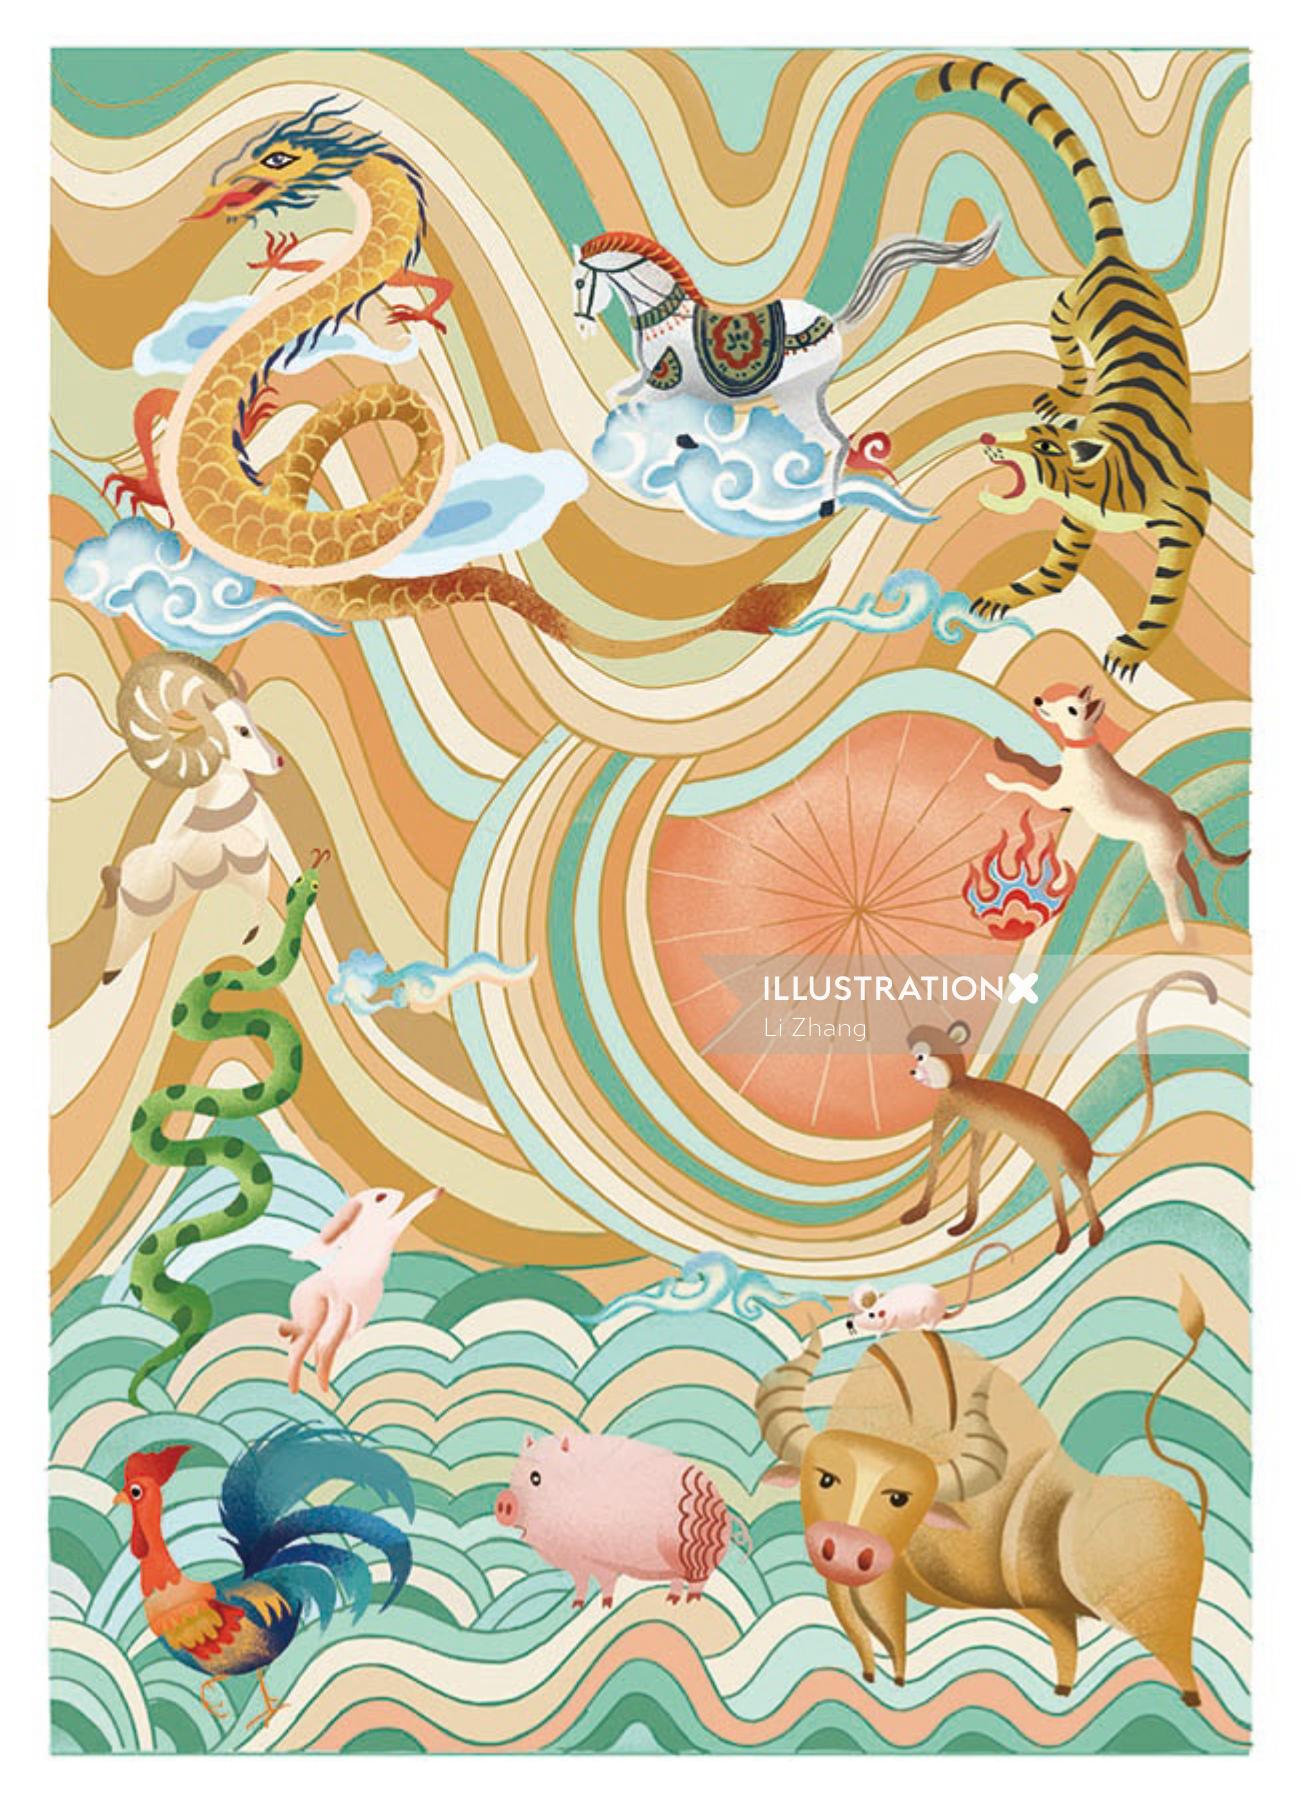 Couverture d&#39;un livre sur le zodiaque chinois, illustré par Li Zhang